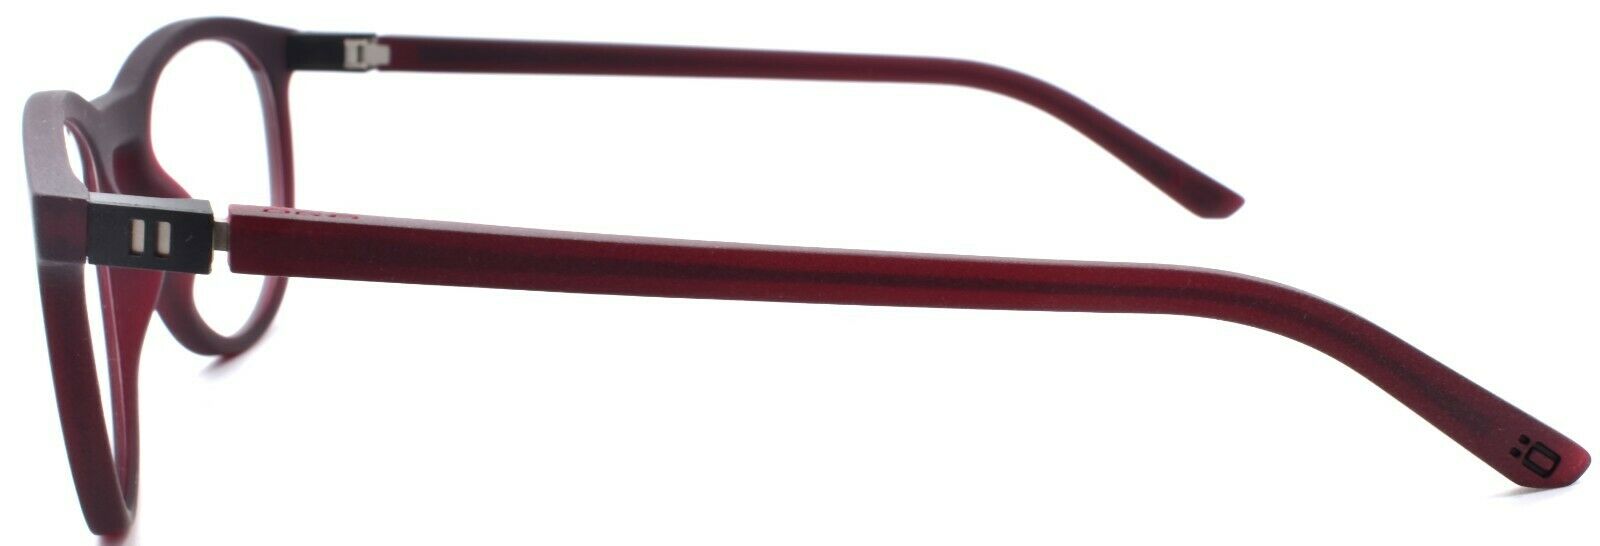 3-OGA by Morel 82040 RN022 Eyeglasses Frames 51-20-140 Red-3604770897678-IKSpecs